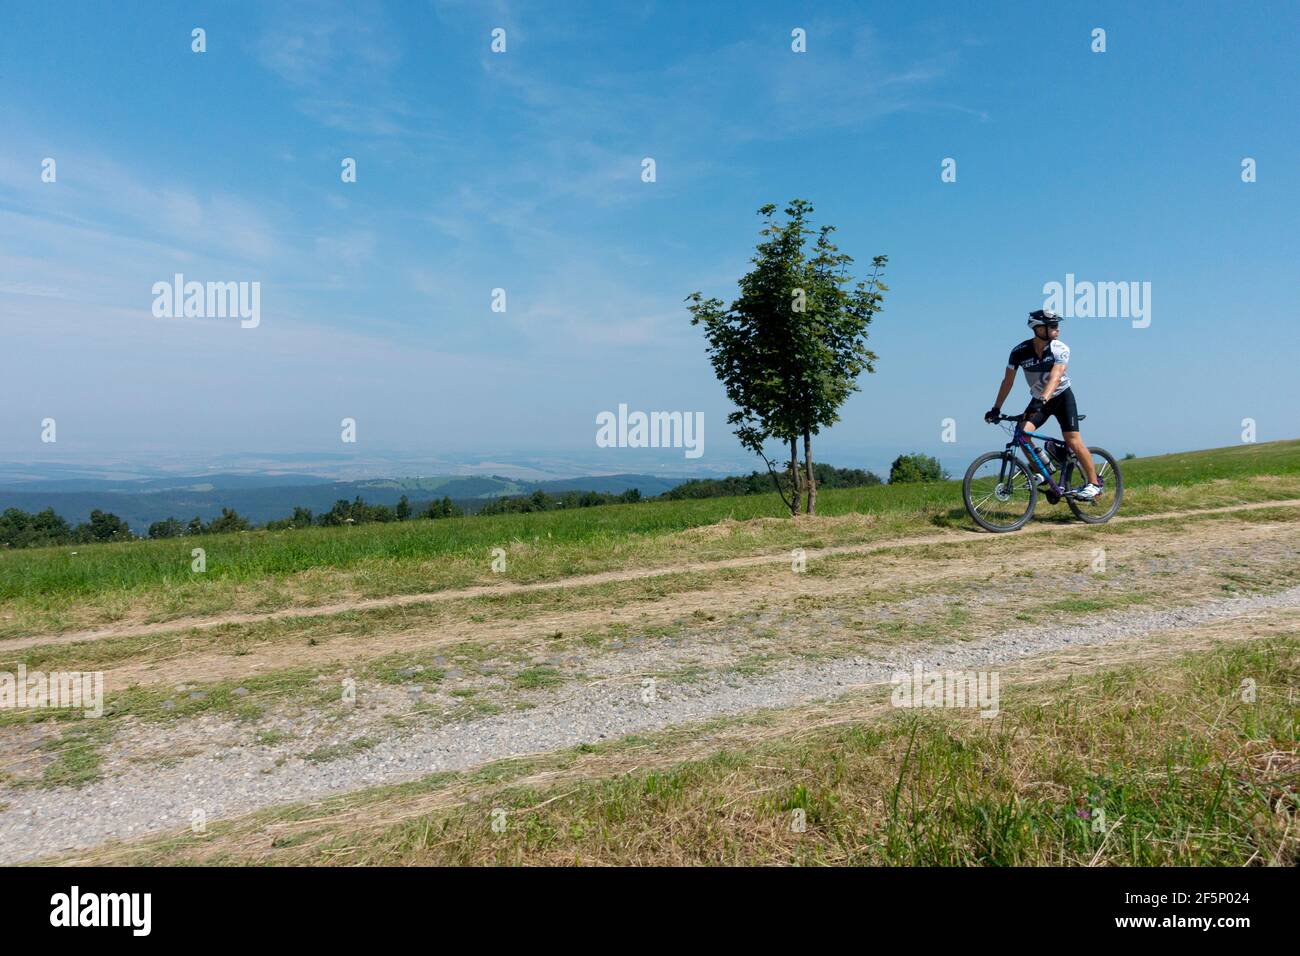 Un hombre en bicicleta solo en una carretera de campo en el campo con un pequeño árbol por la carretera, estilo de vida en un buen día, ciclista Foto de stock